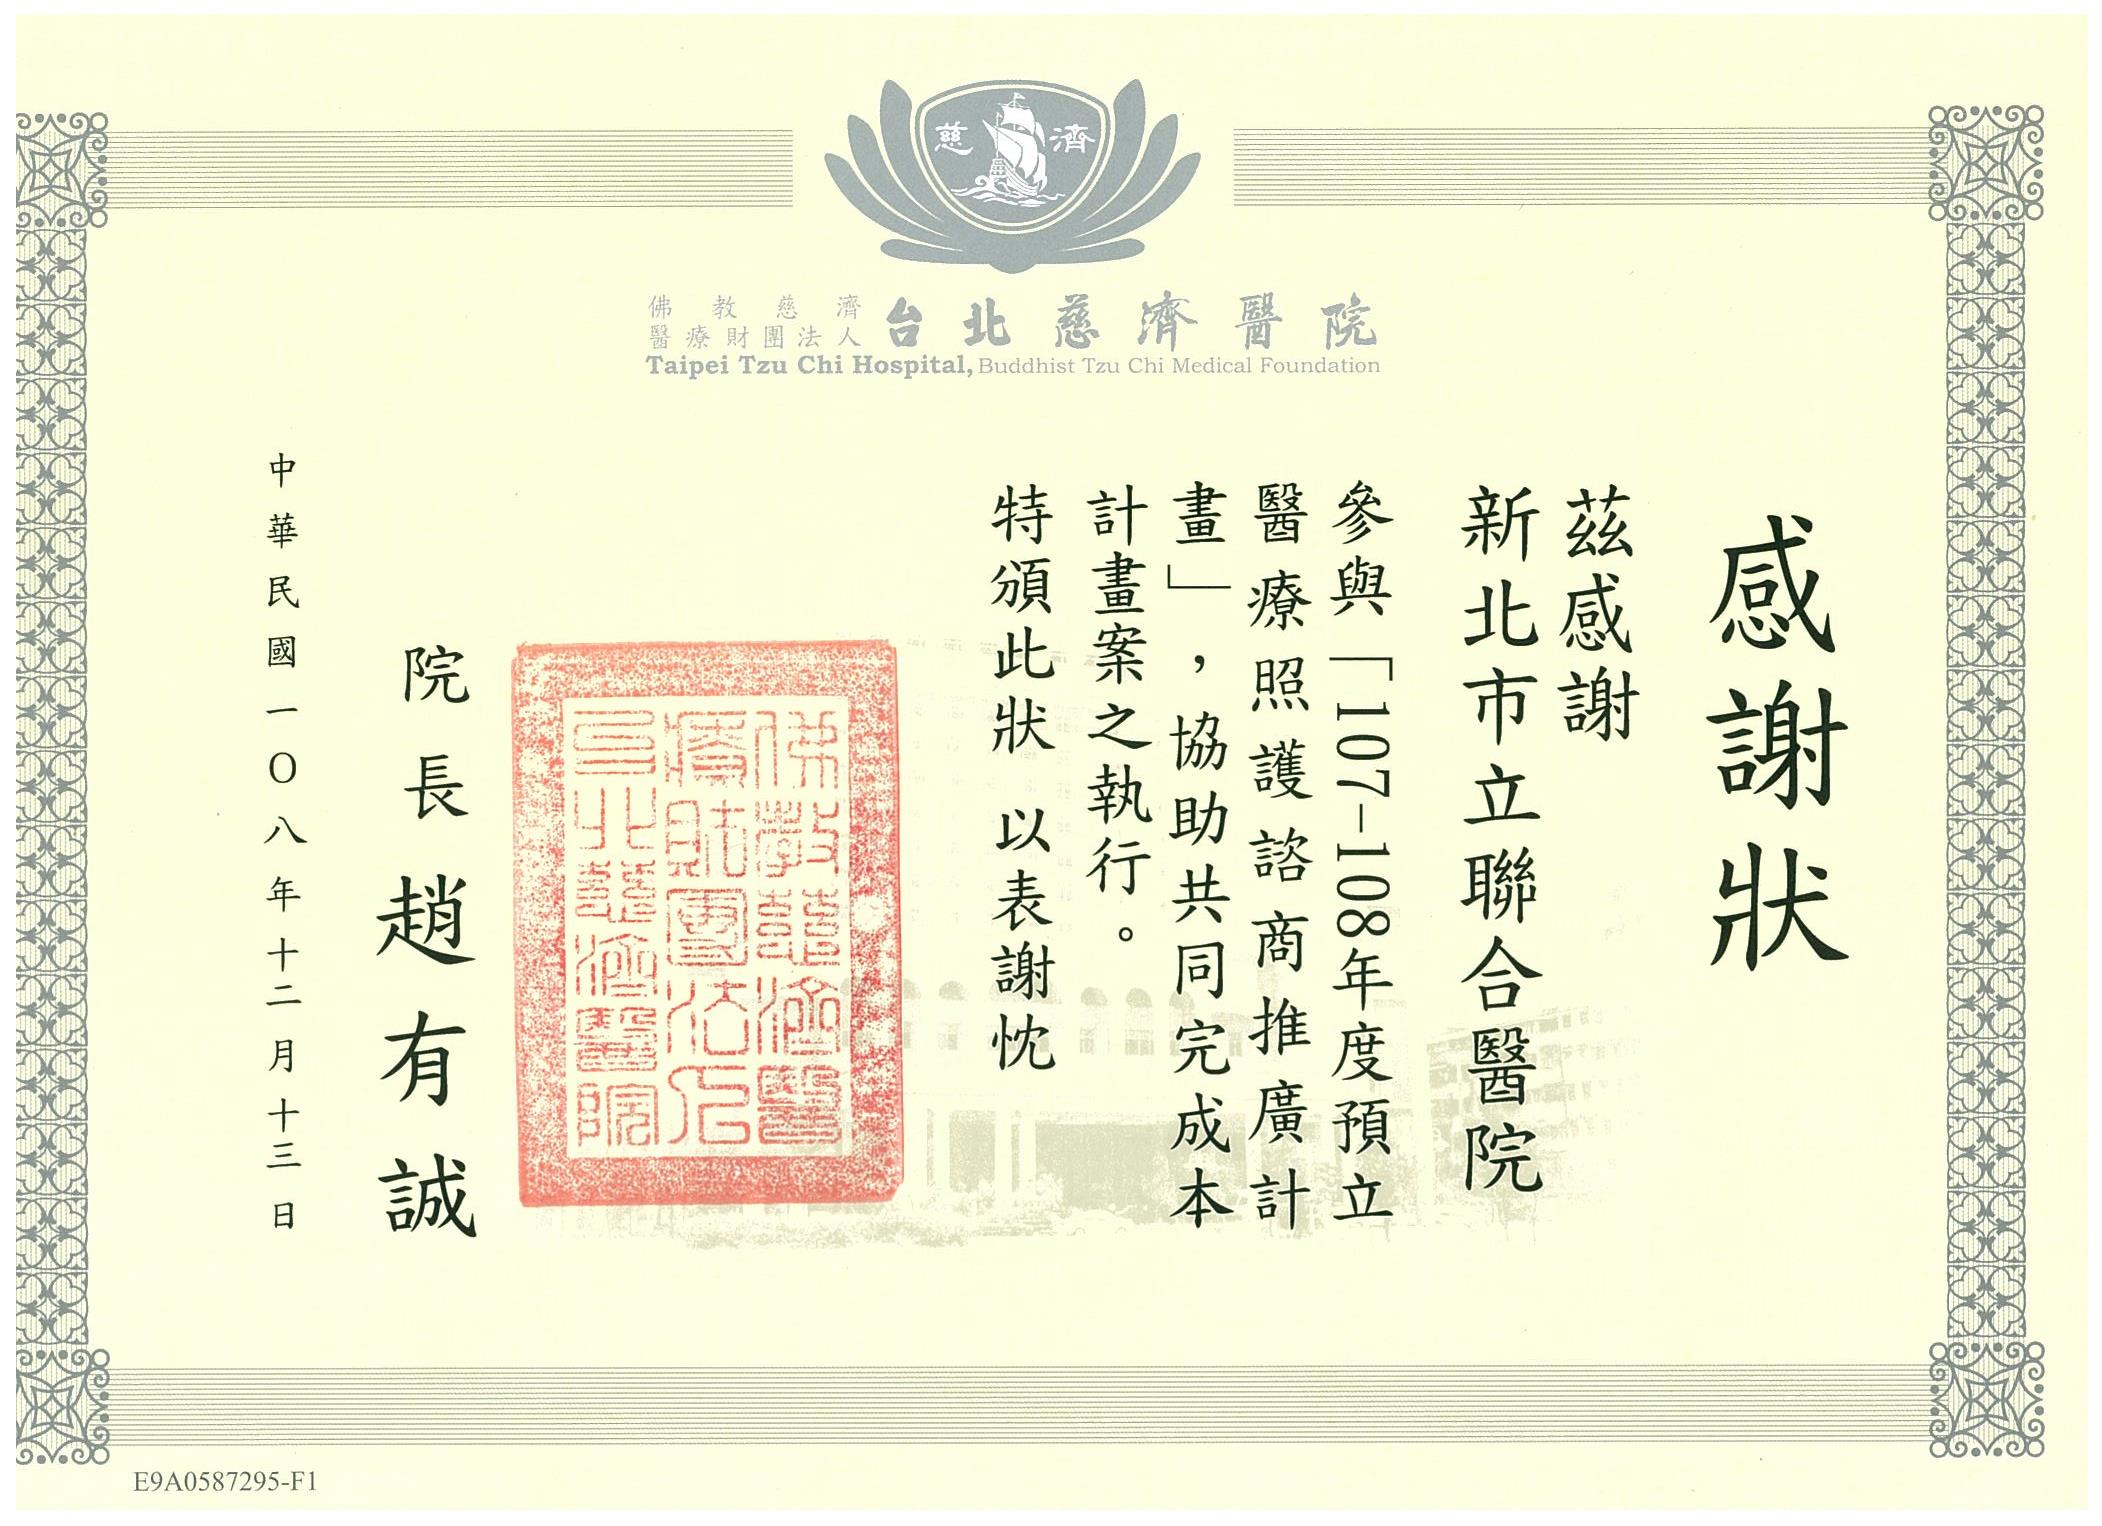 107-108年度預立醫療照護諮商推廣計畫於台北慈院接受感謝狀